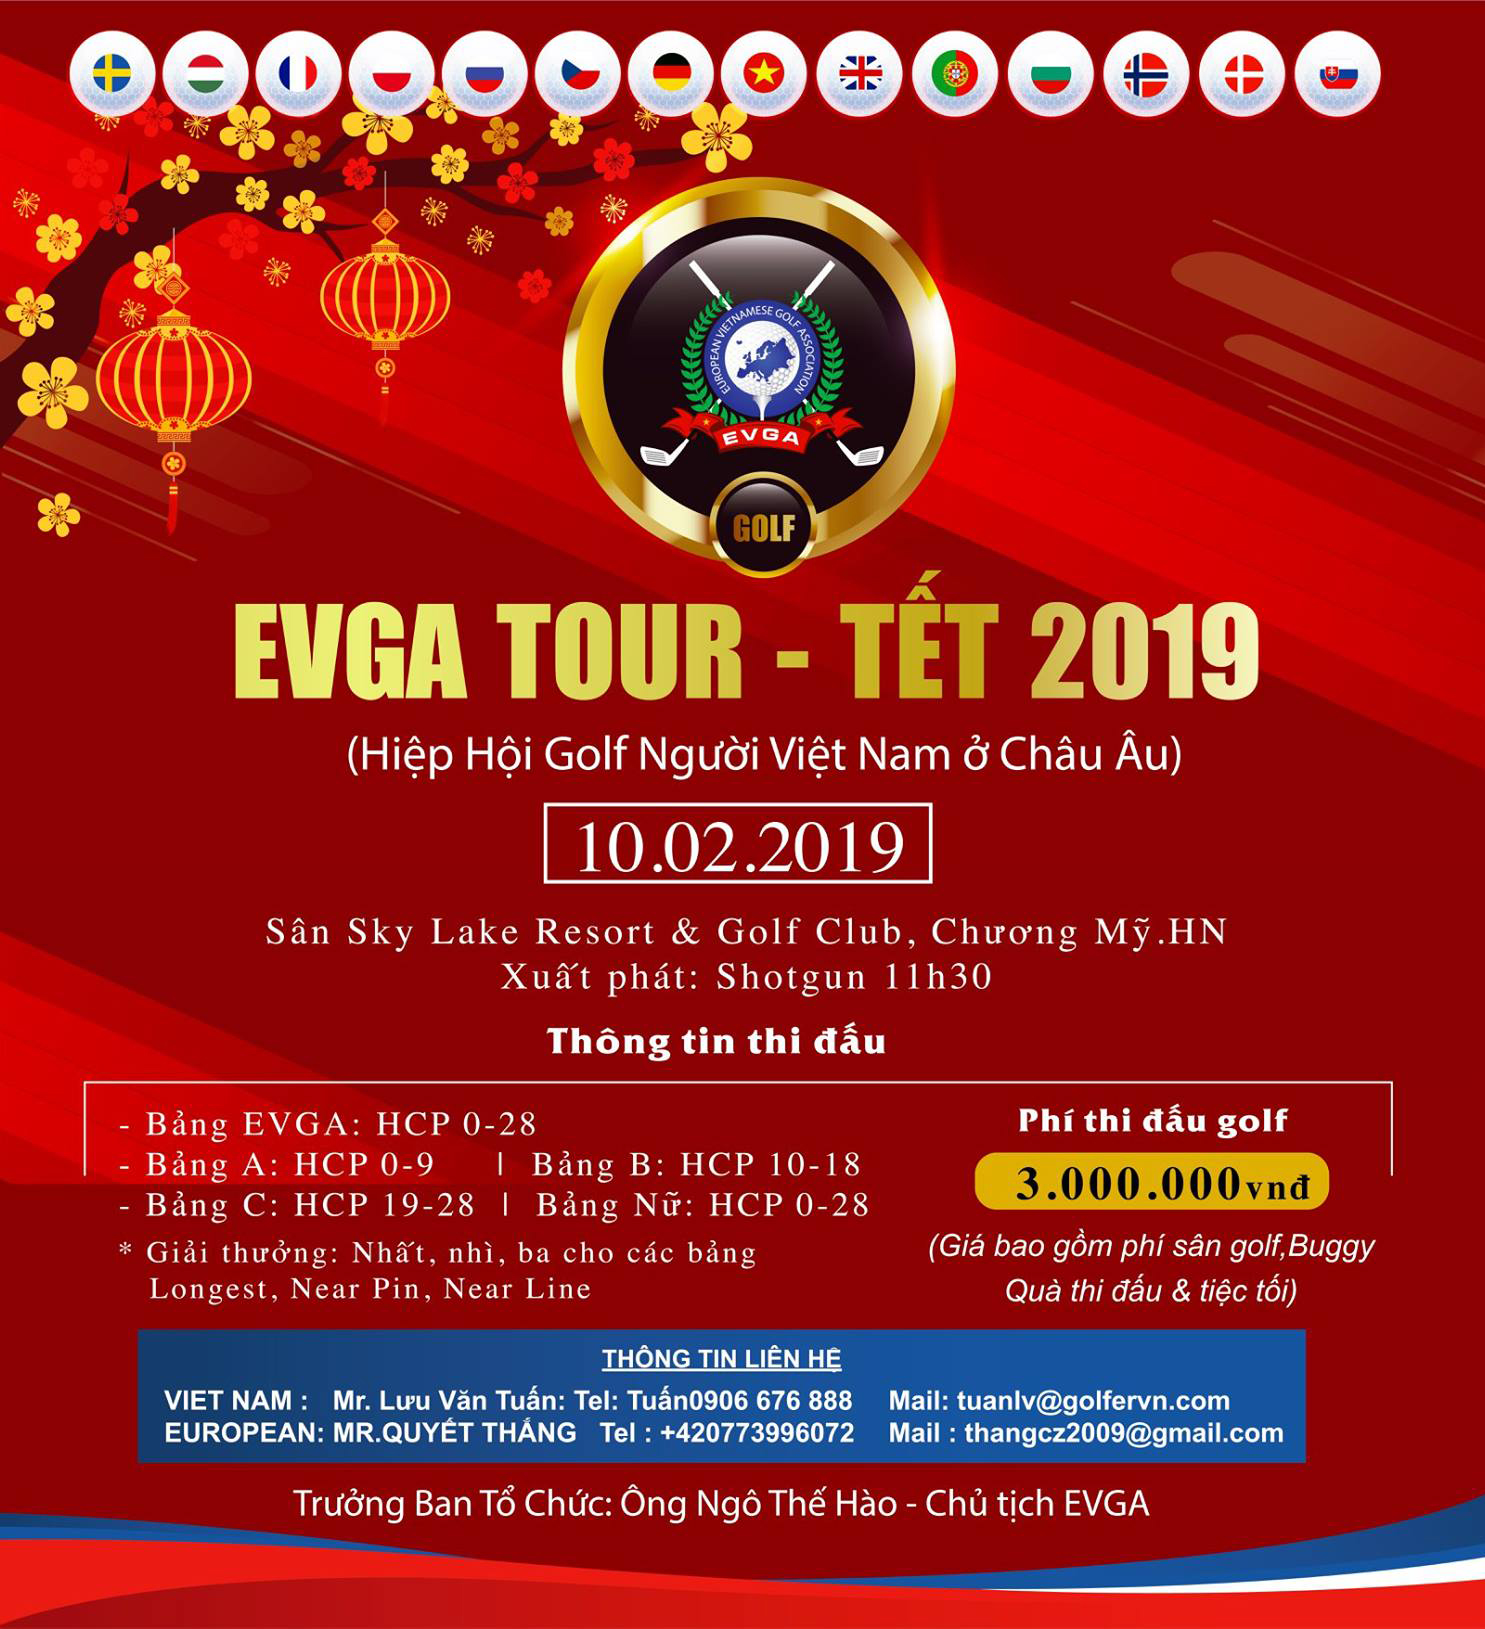 'EVGA Tour - Tết 2019' lần đầu tiên tổ chức tại Việt Nam